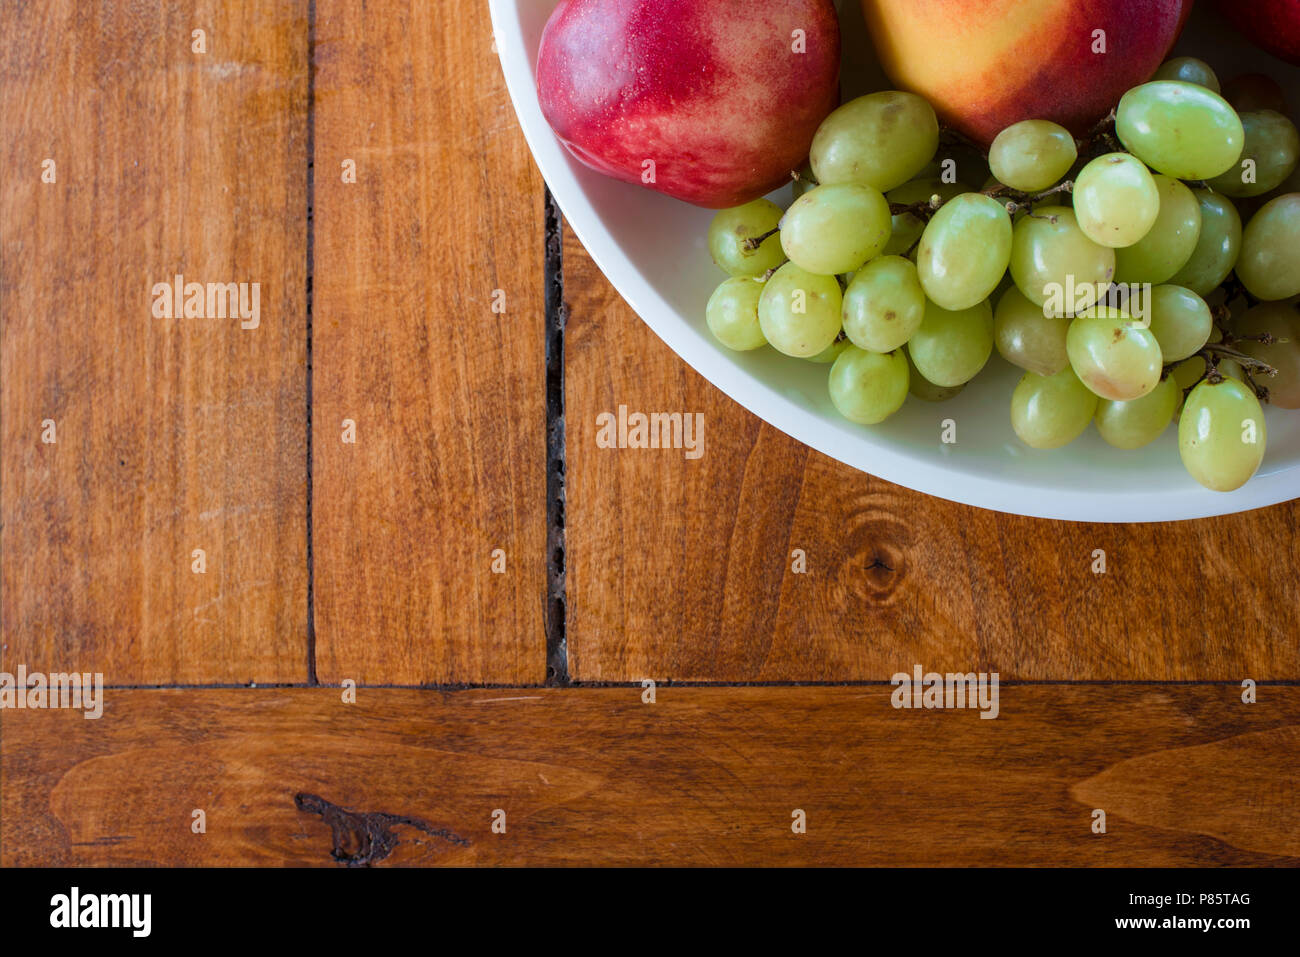 Schale mit Apfel-, Pfirsich- und Trauben von oben Blickwinkel auf Holz Textur Hintergrund gedreht. Gesunde Bio-Lebensmittel in hölzernen Tisch, mit Kopie Raum Stockfoto